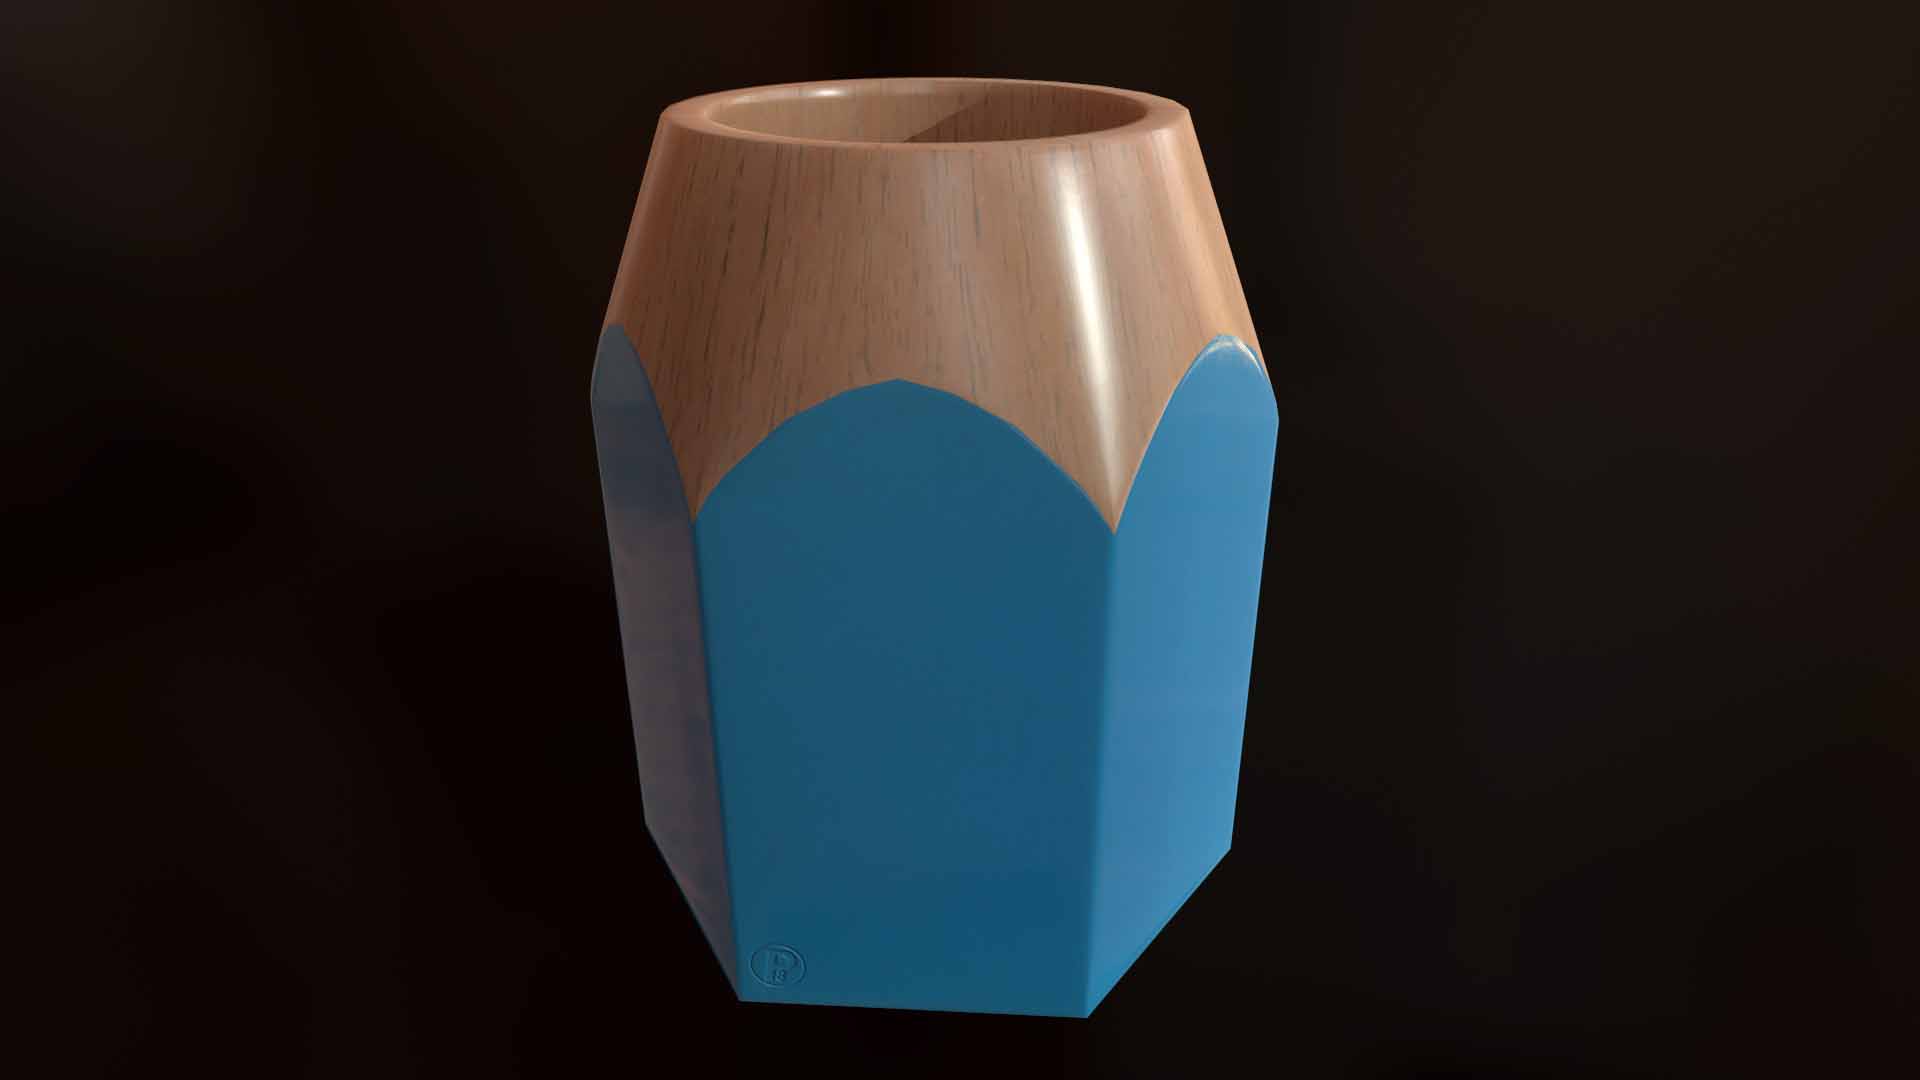 pencil-pot-pencilpot-blue-3d-front-pixelion8